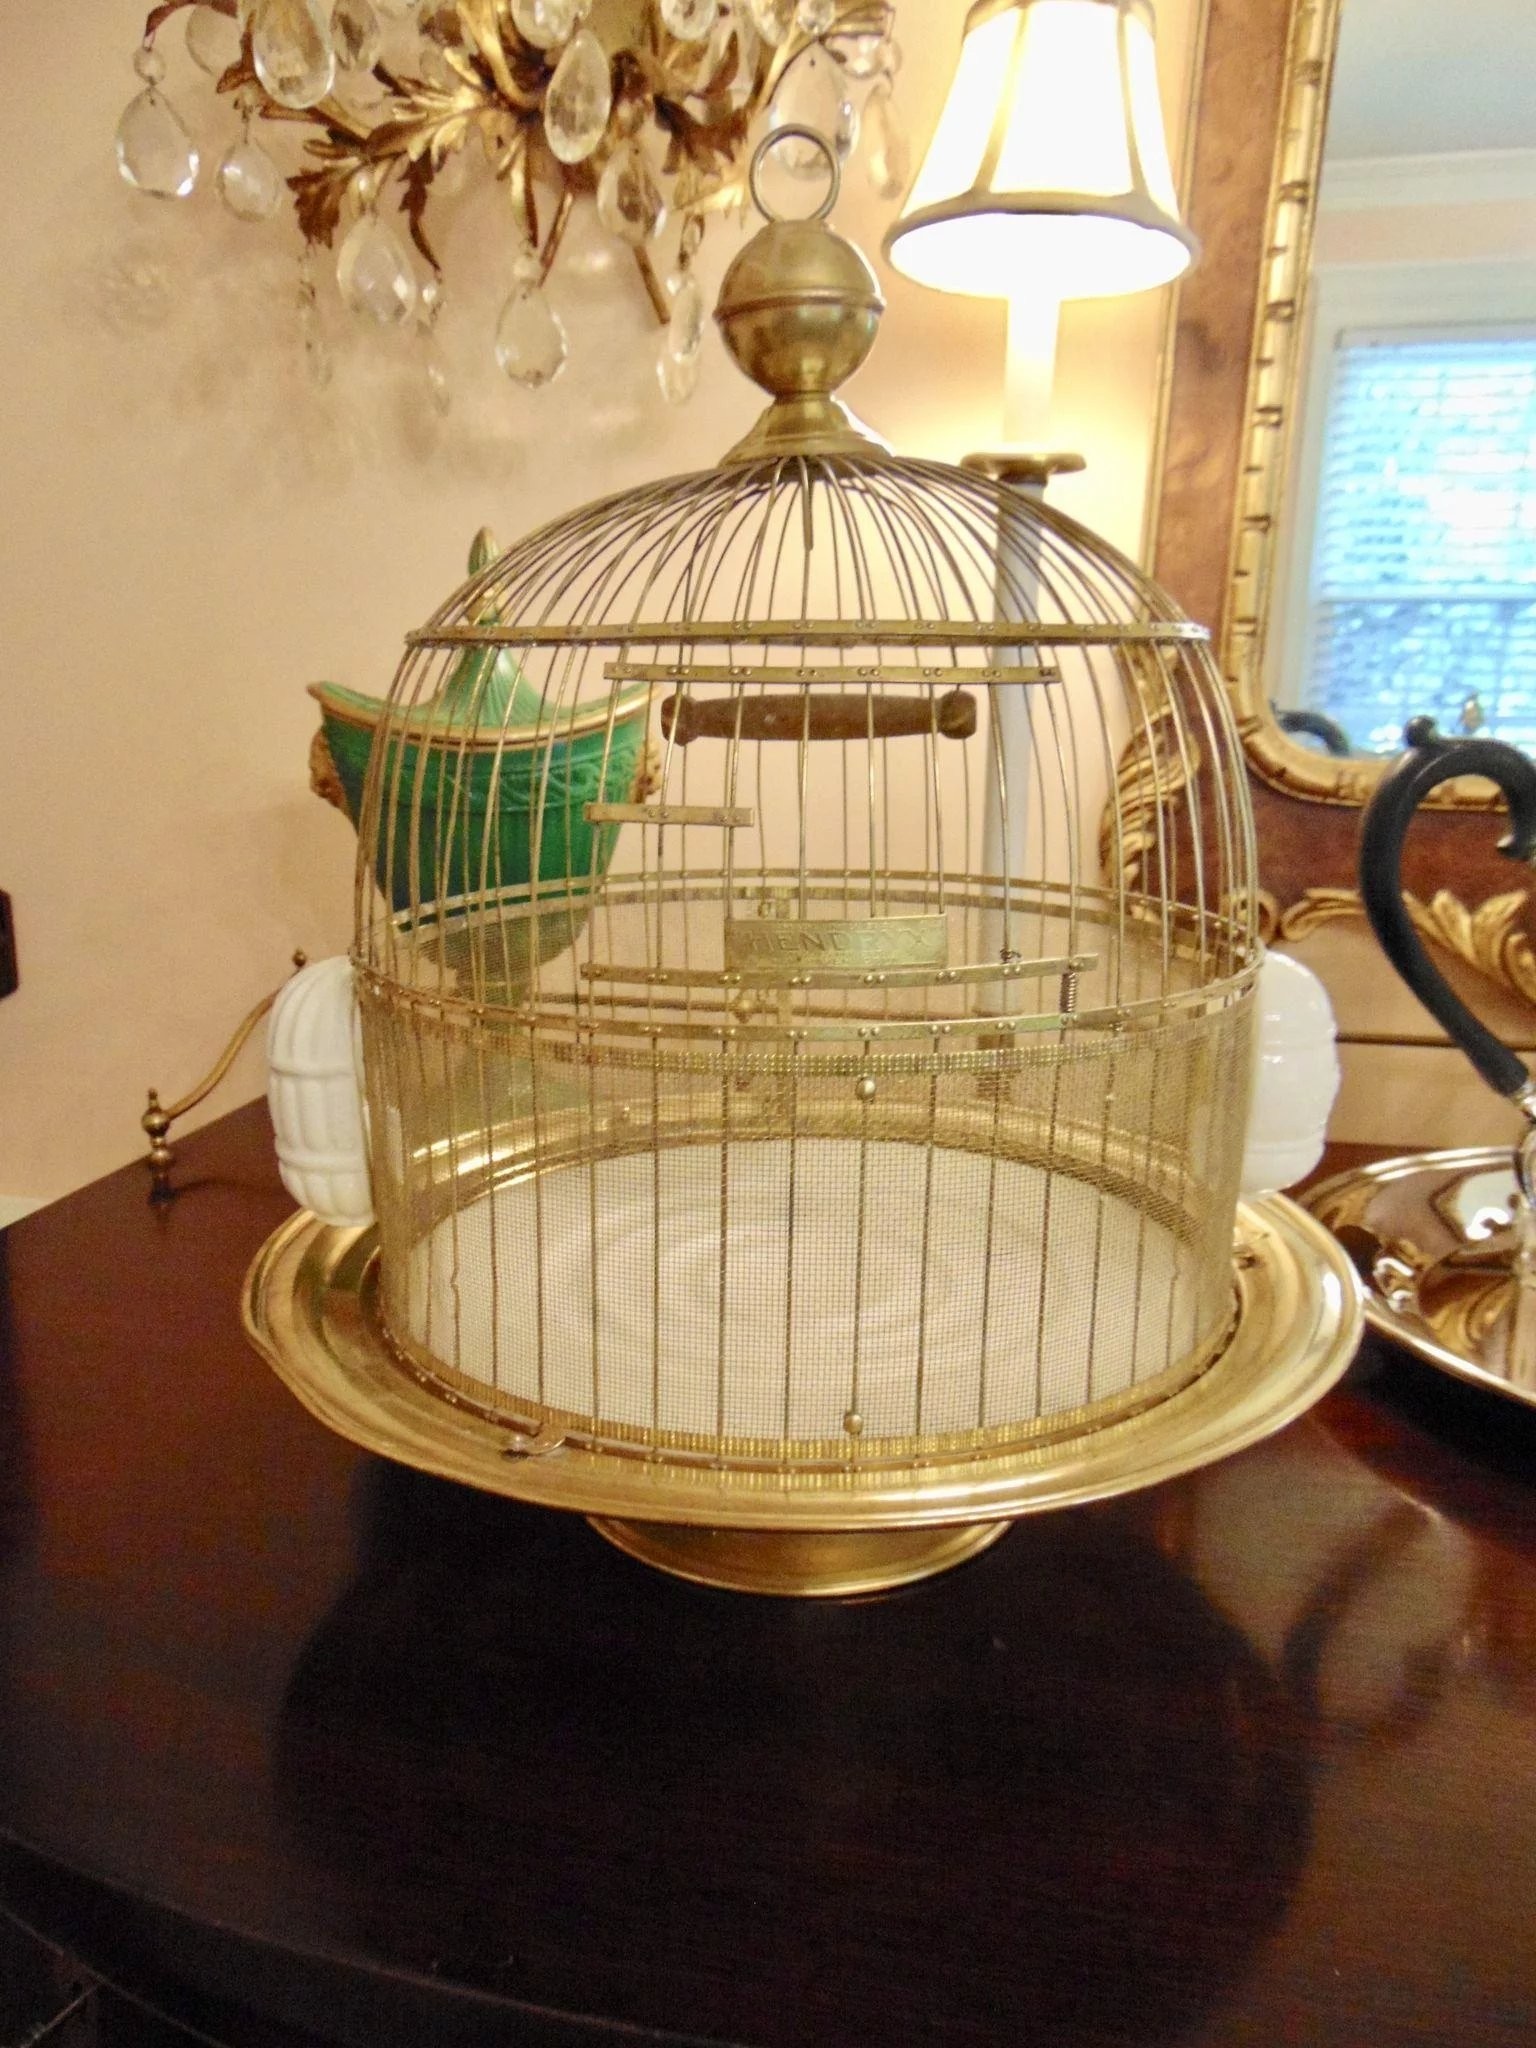 Vintage hendryx pedestal bird cage with milk glass feeders 1